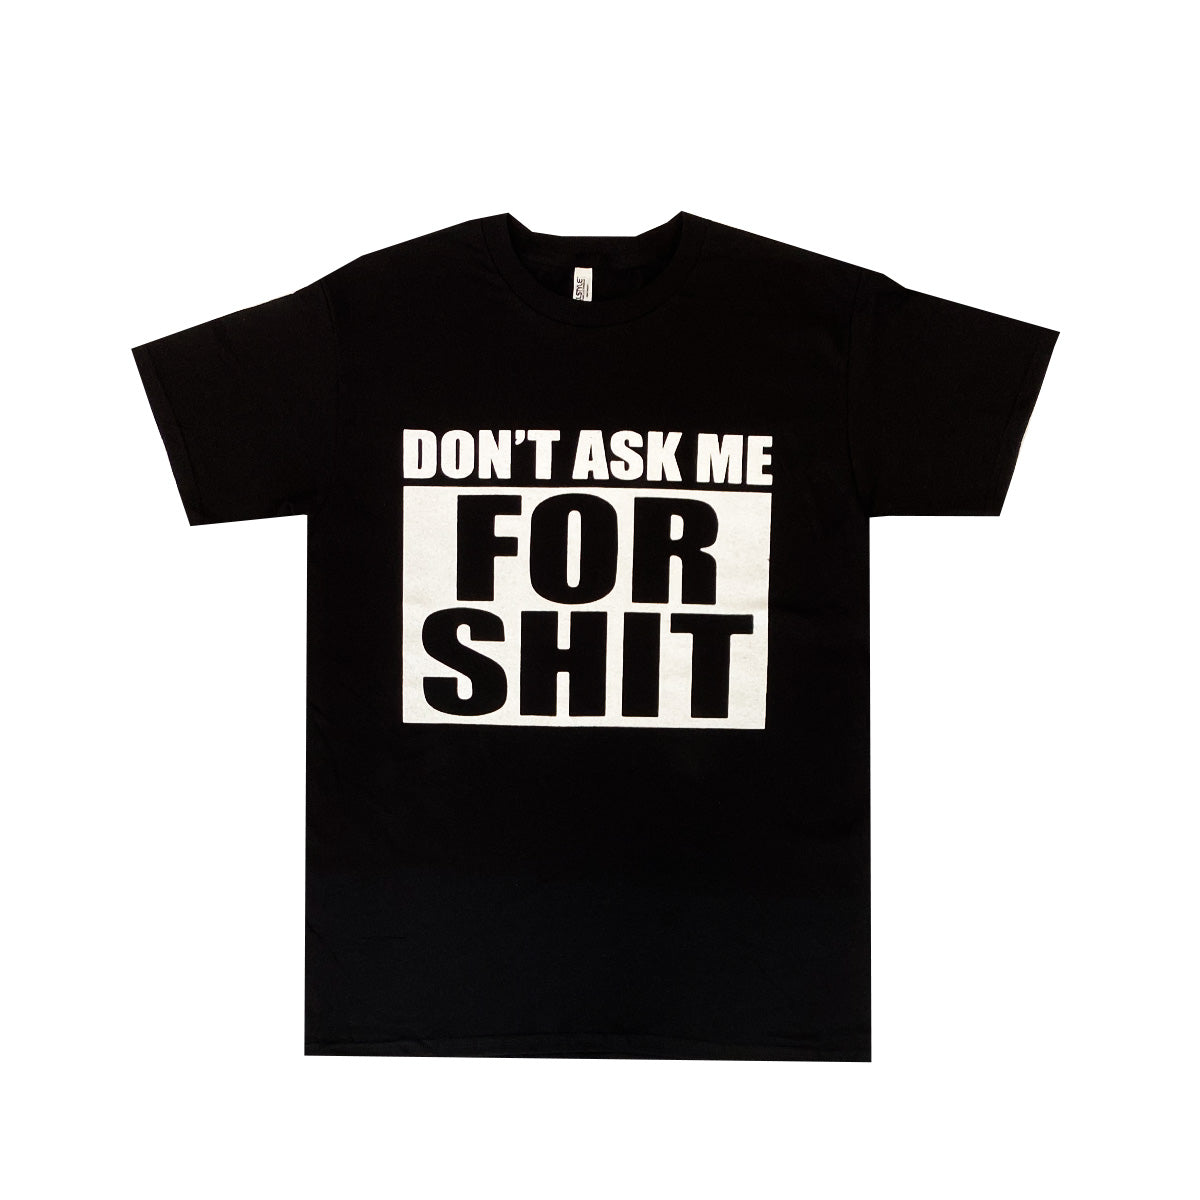 Camiseta Don't Ask Me For Shit 100% Algodón, Pack de 5 Unidades, M, L, XL, XXL, XXXL